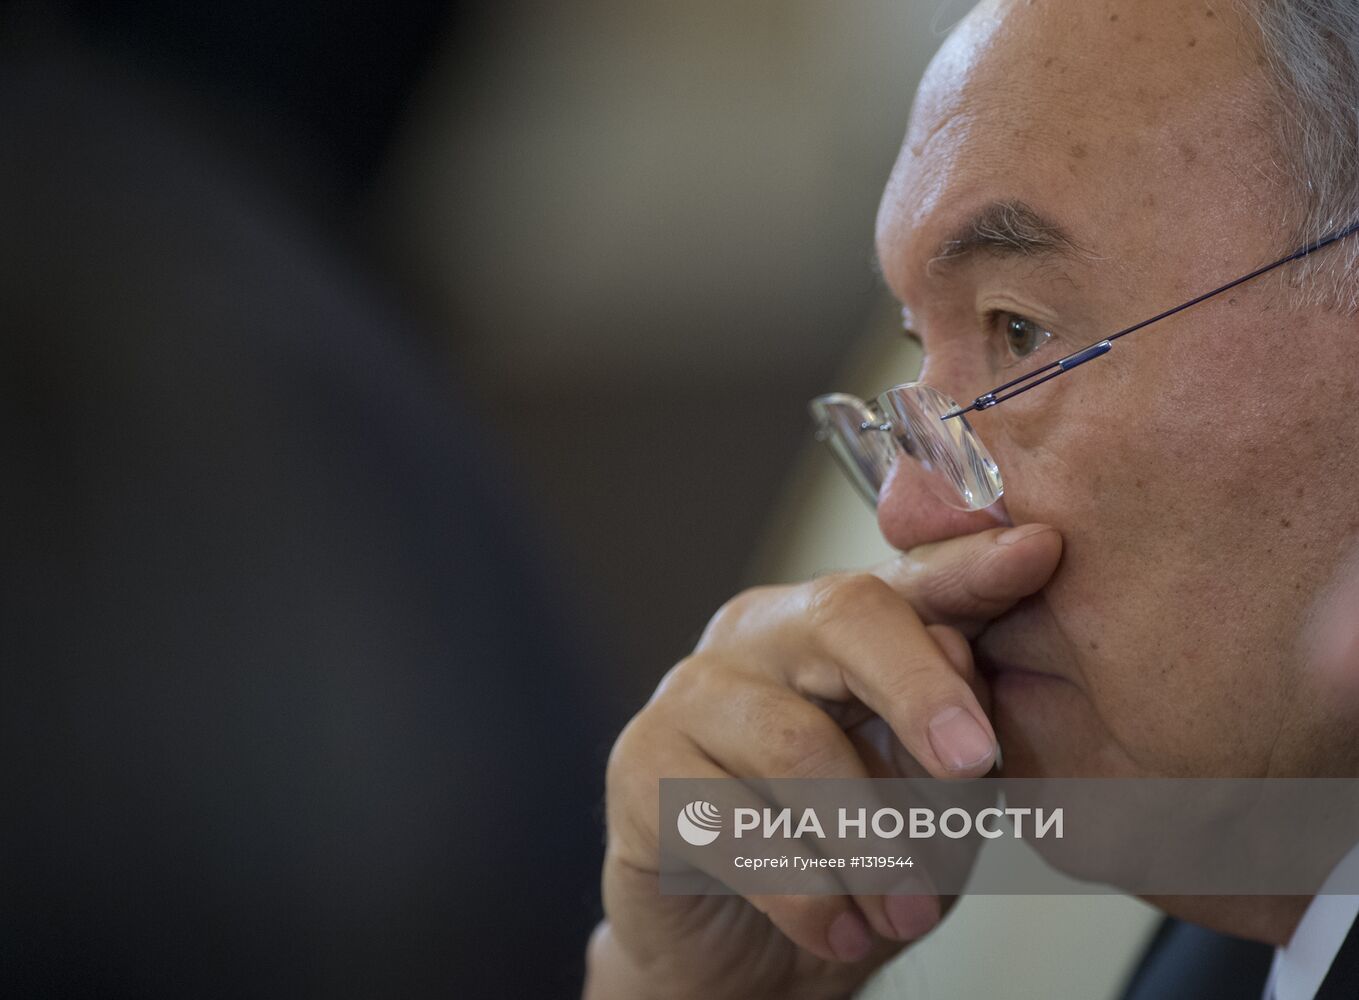 Н.Назарбаев на сессии Совета ОДКБ в Кремле